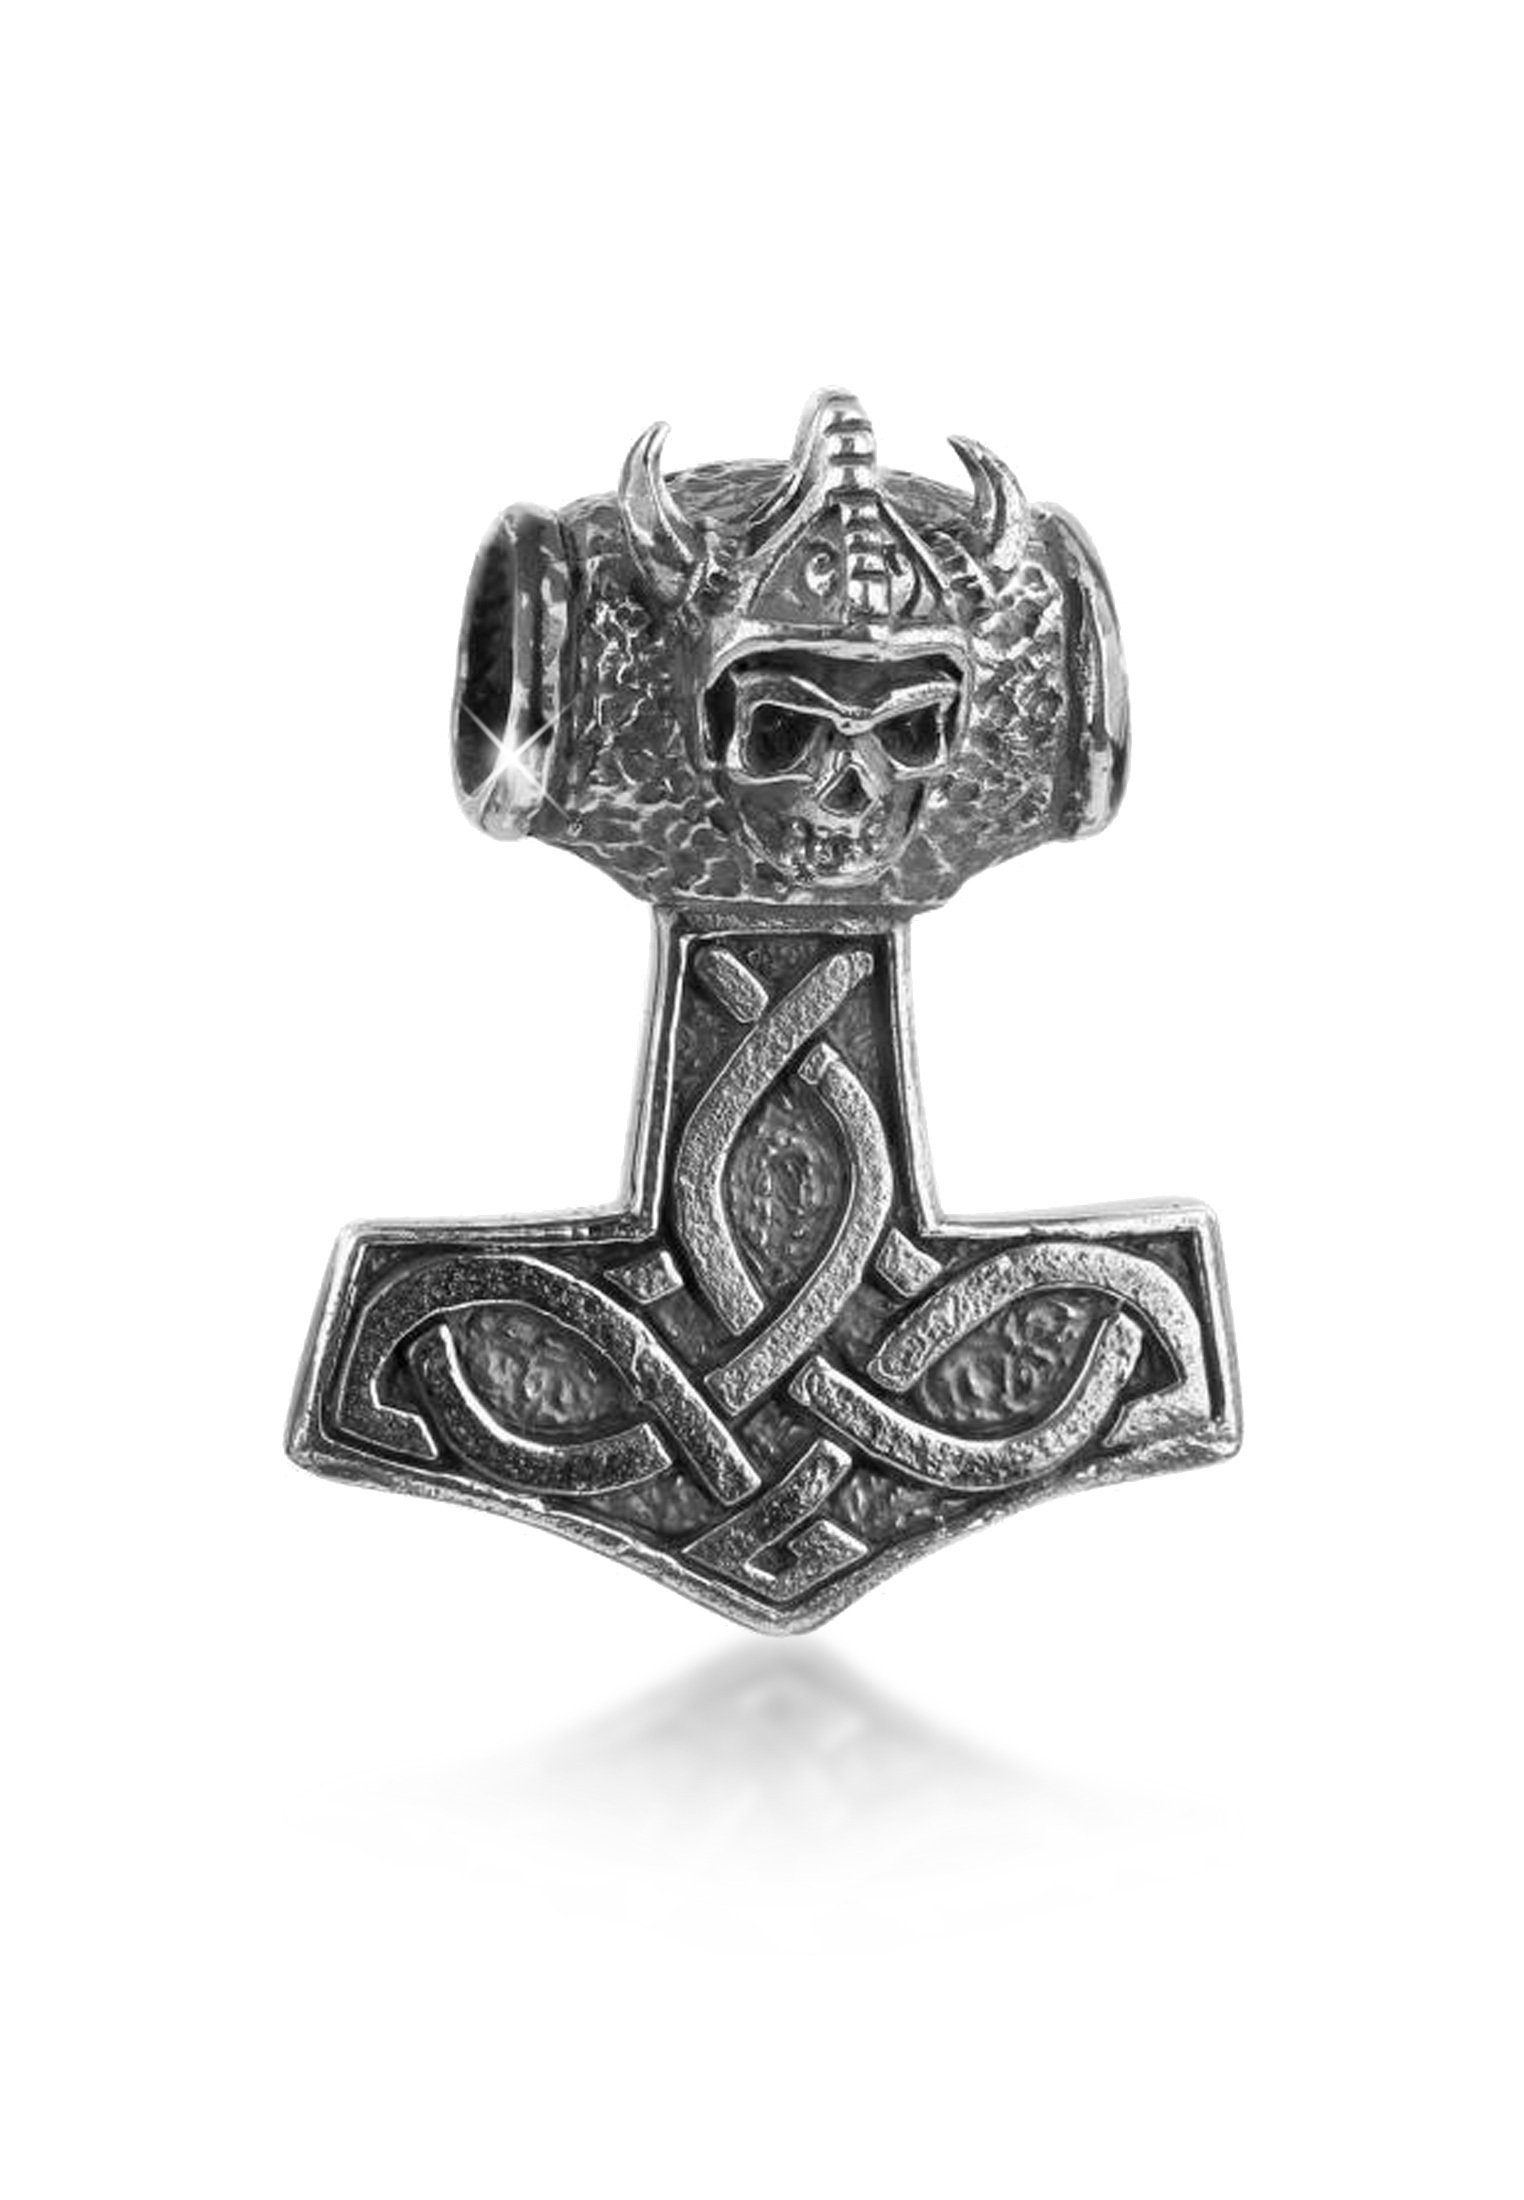 Keltischer Herren Das Mann Kettenanhänger den Hammer oder Thors Freund Knoten Kuzzoi ideale für Geschenk Silber, 925